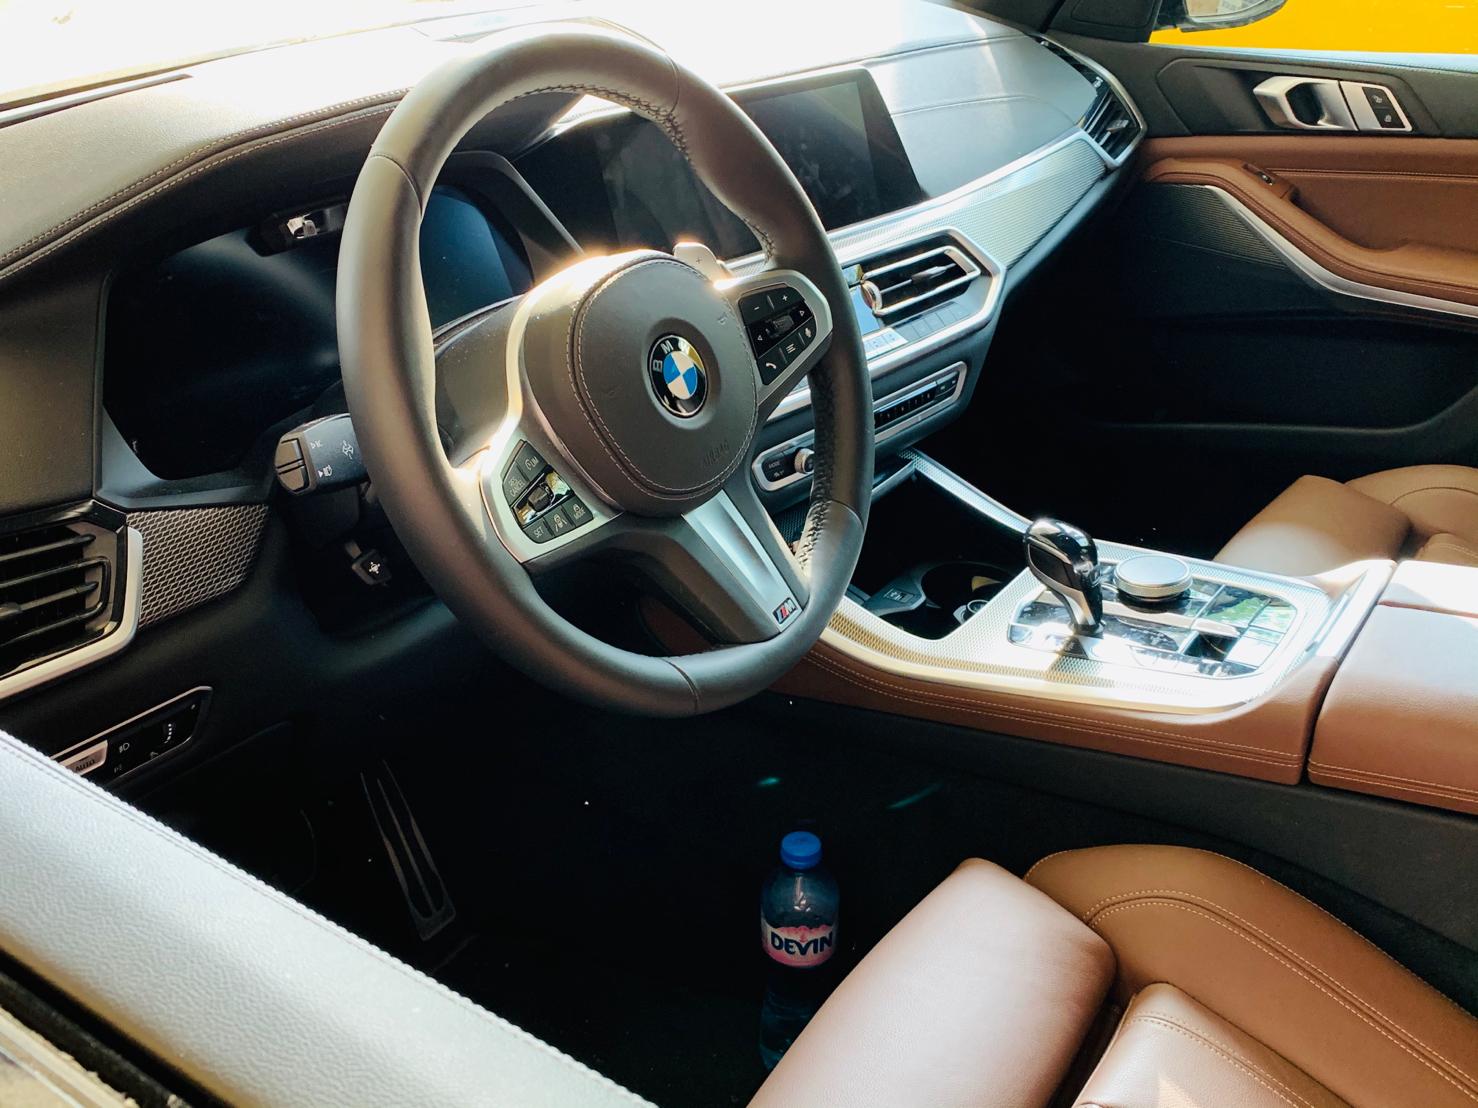 stolen BMW X5